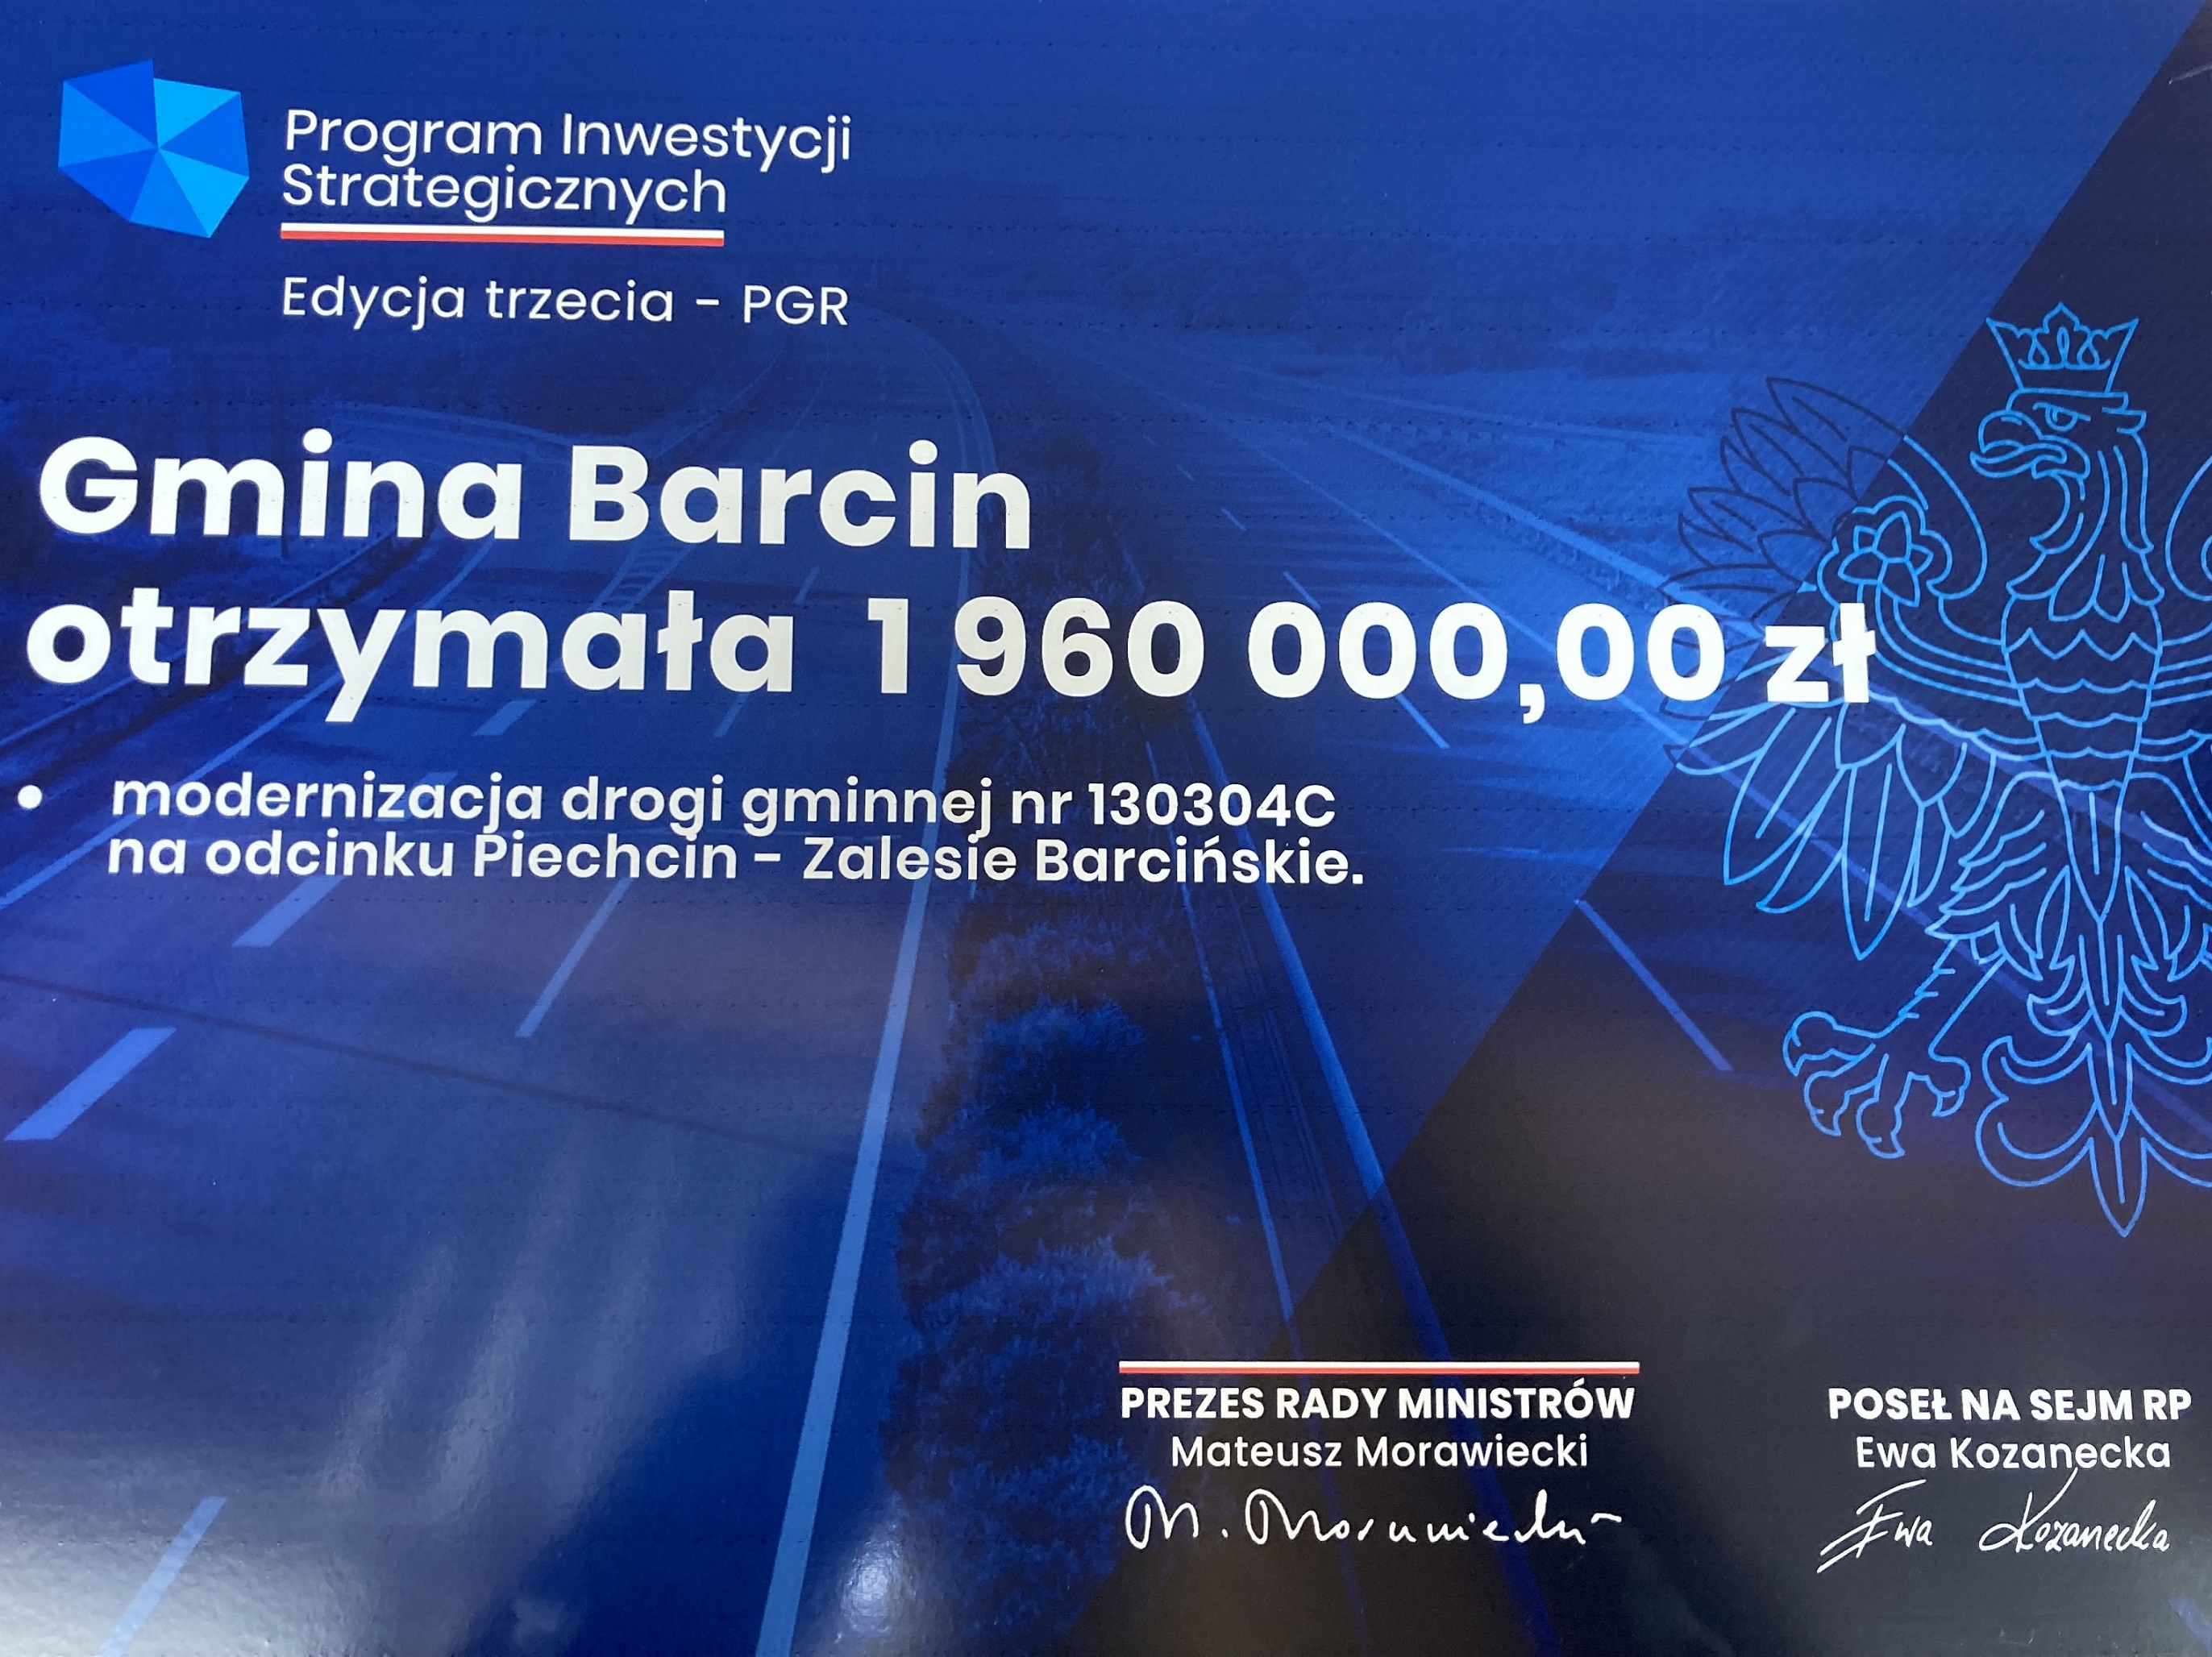 Symboliczna promesa dofinansowania modernizacji drogi gminnej nr 130304C na odcinku Piechcin – Zalesie Barcińskie z Rządowego Funduszu Polski Ład: Program Inwestycji Strategicznych (Edycja trzecia – PGR)